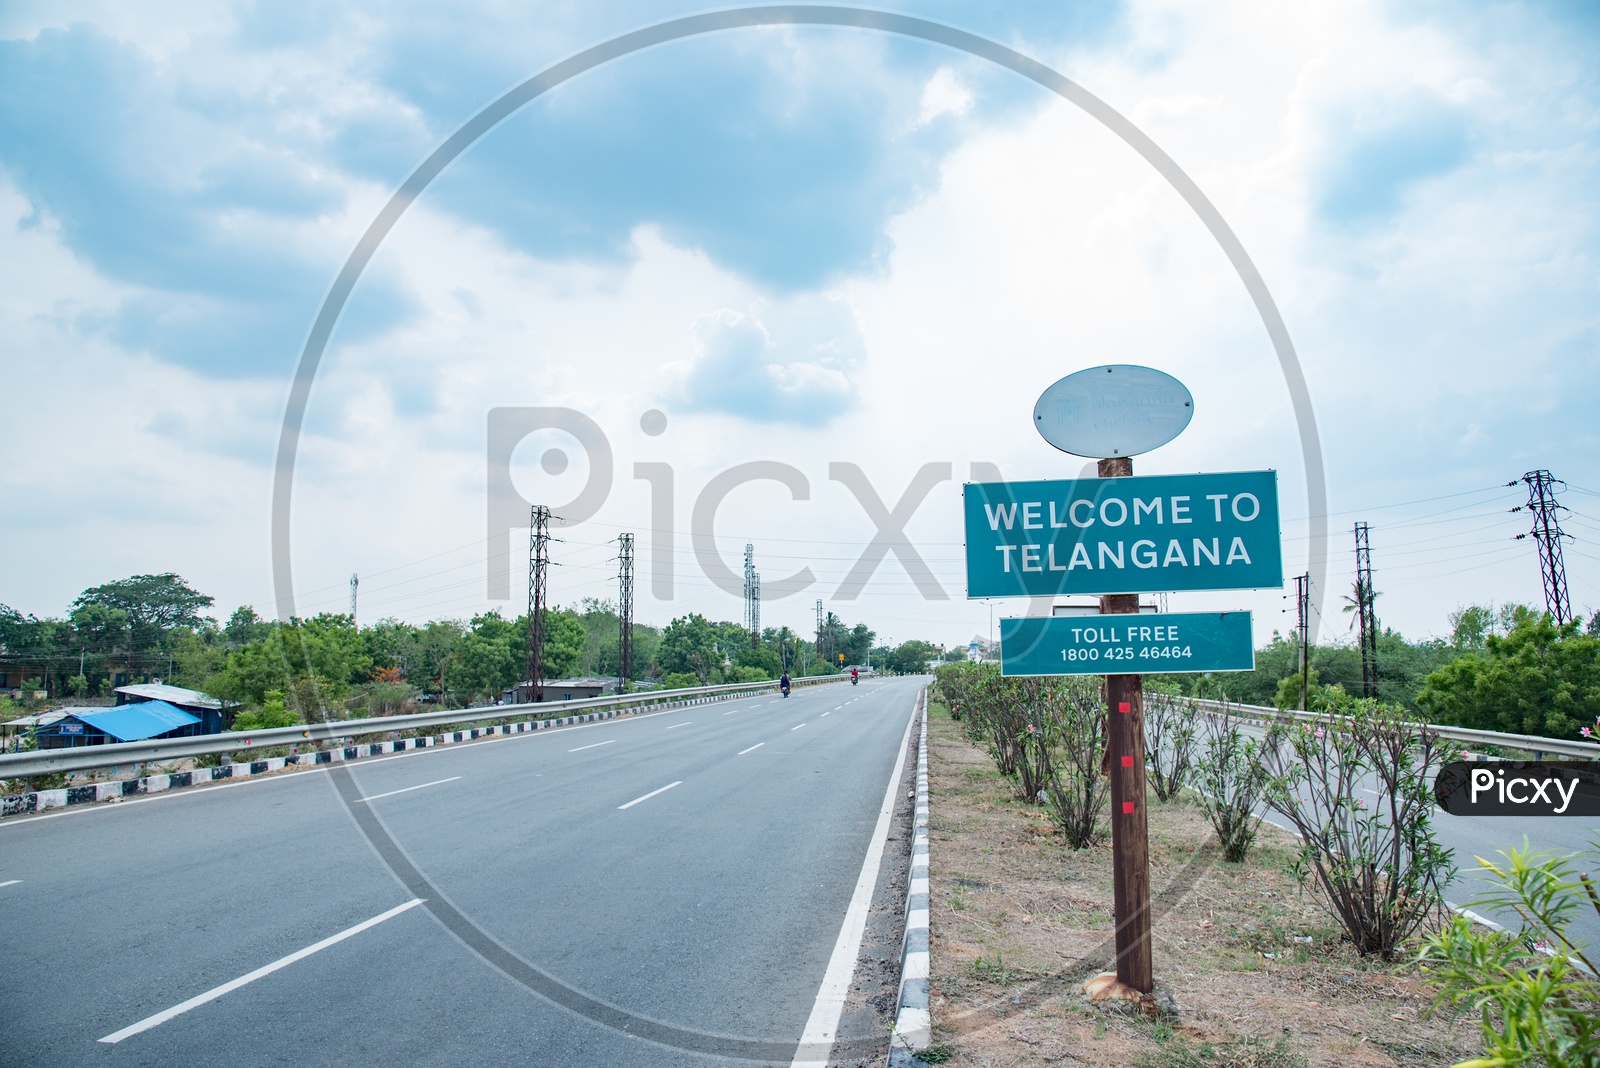 welcome to telangana board at Telangana-Andhra Pradesh Border.